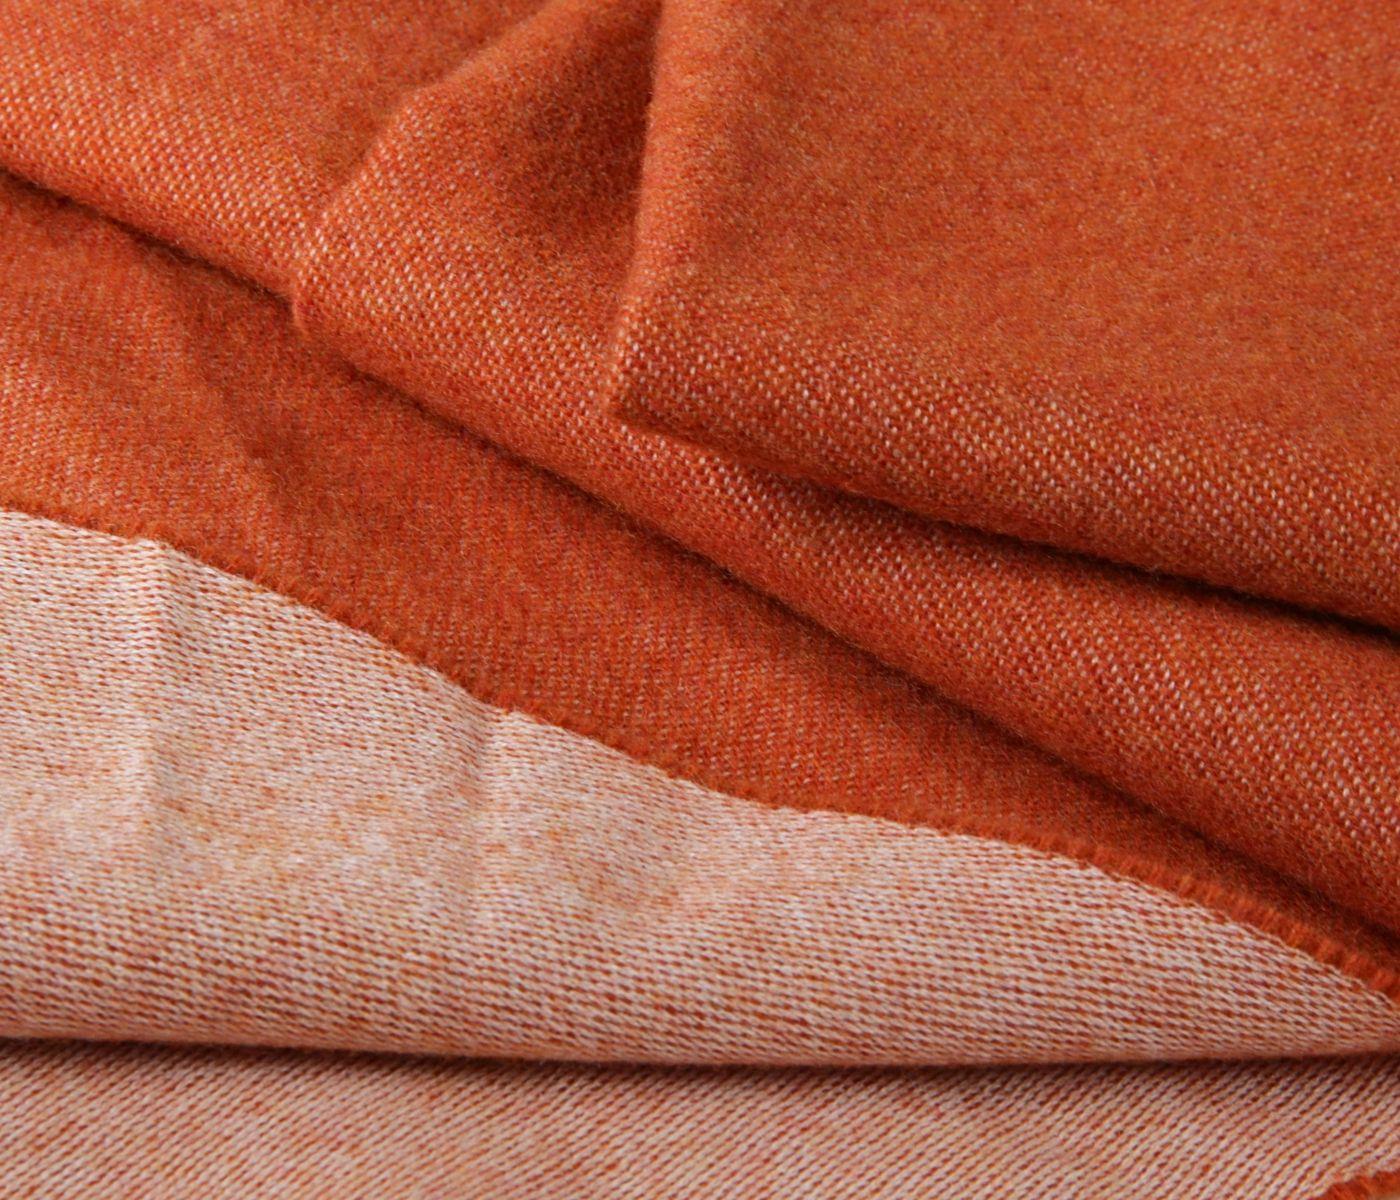 Eagle Products Schal aus Schurwolle in orange, 45 x 190 cm